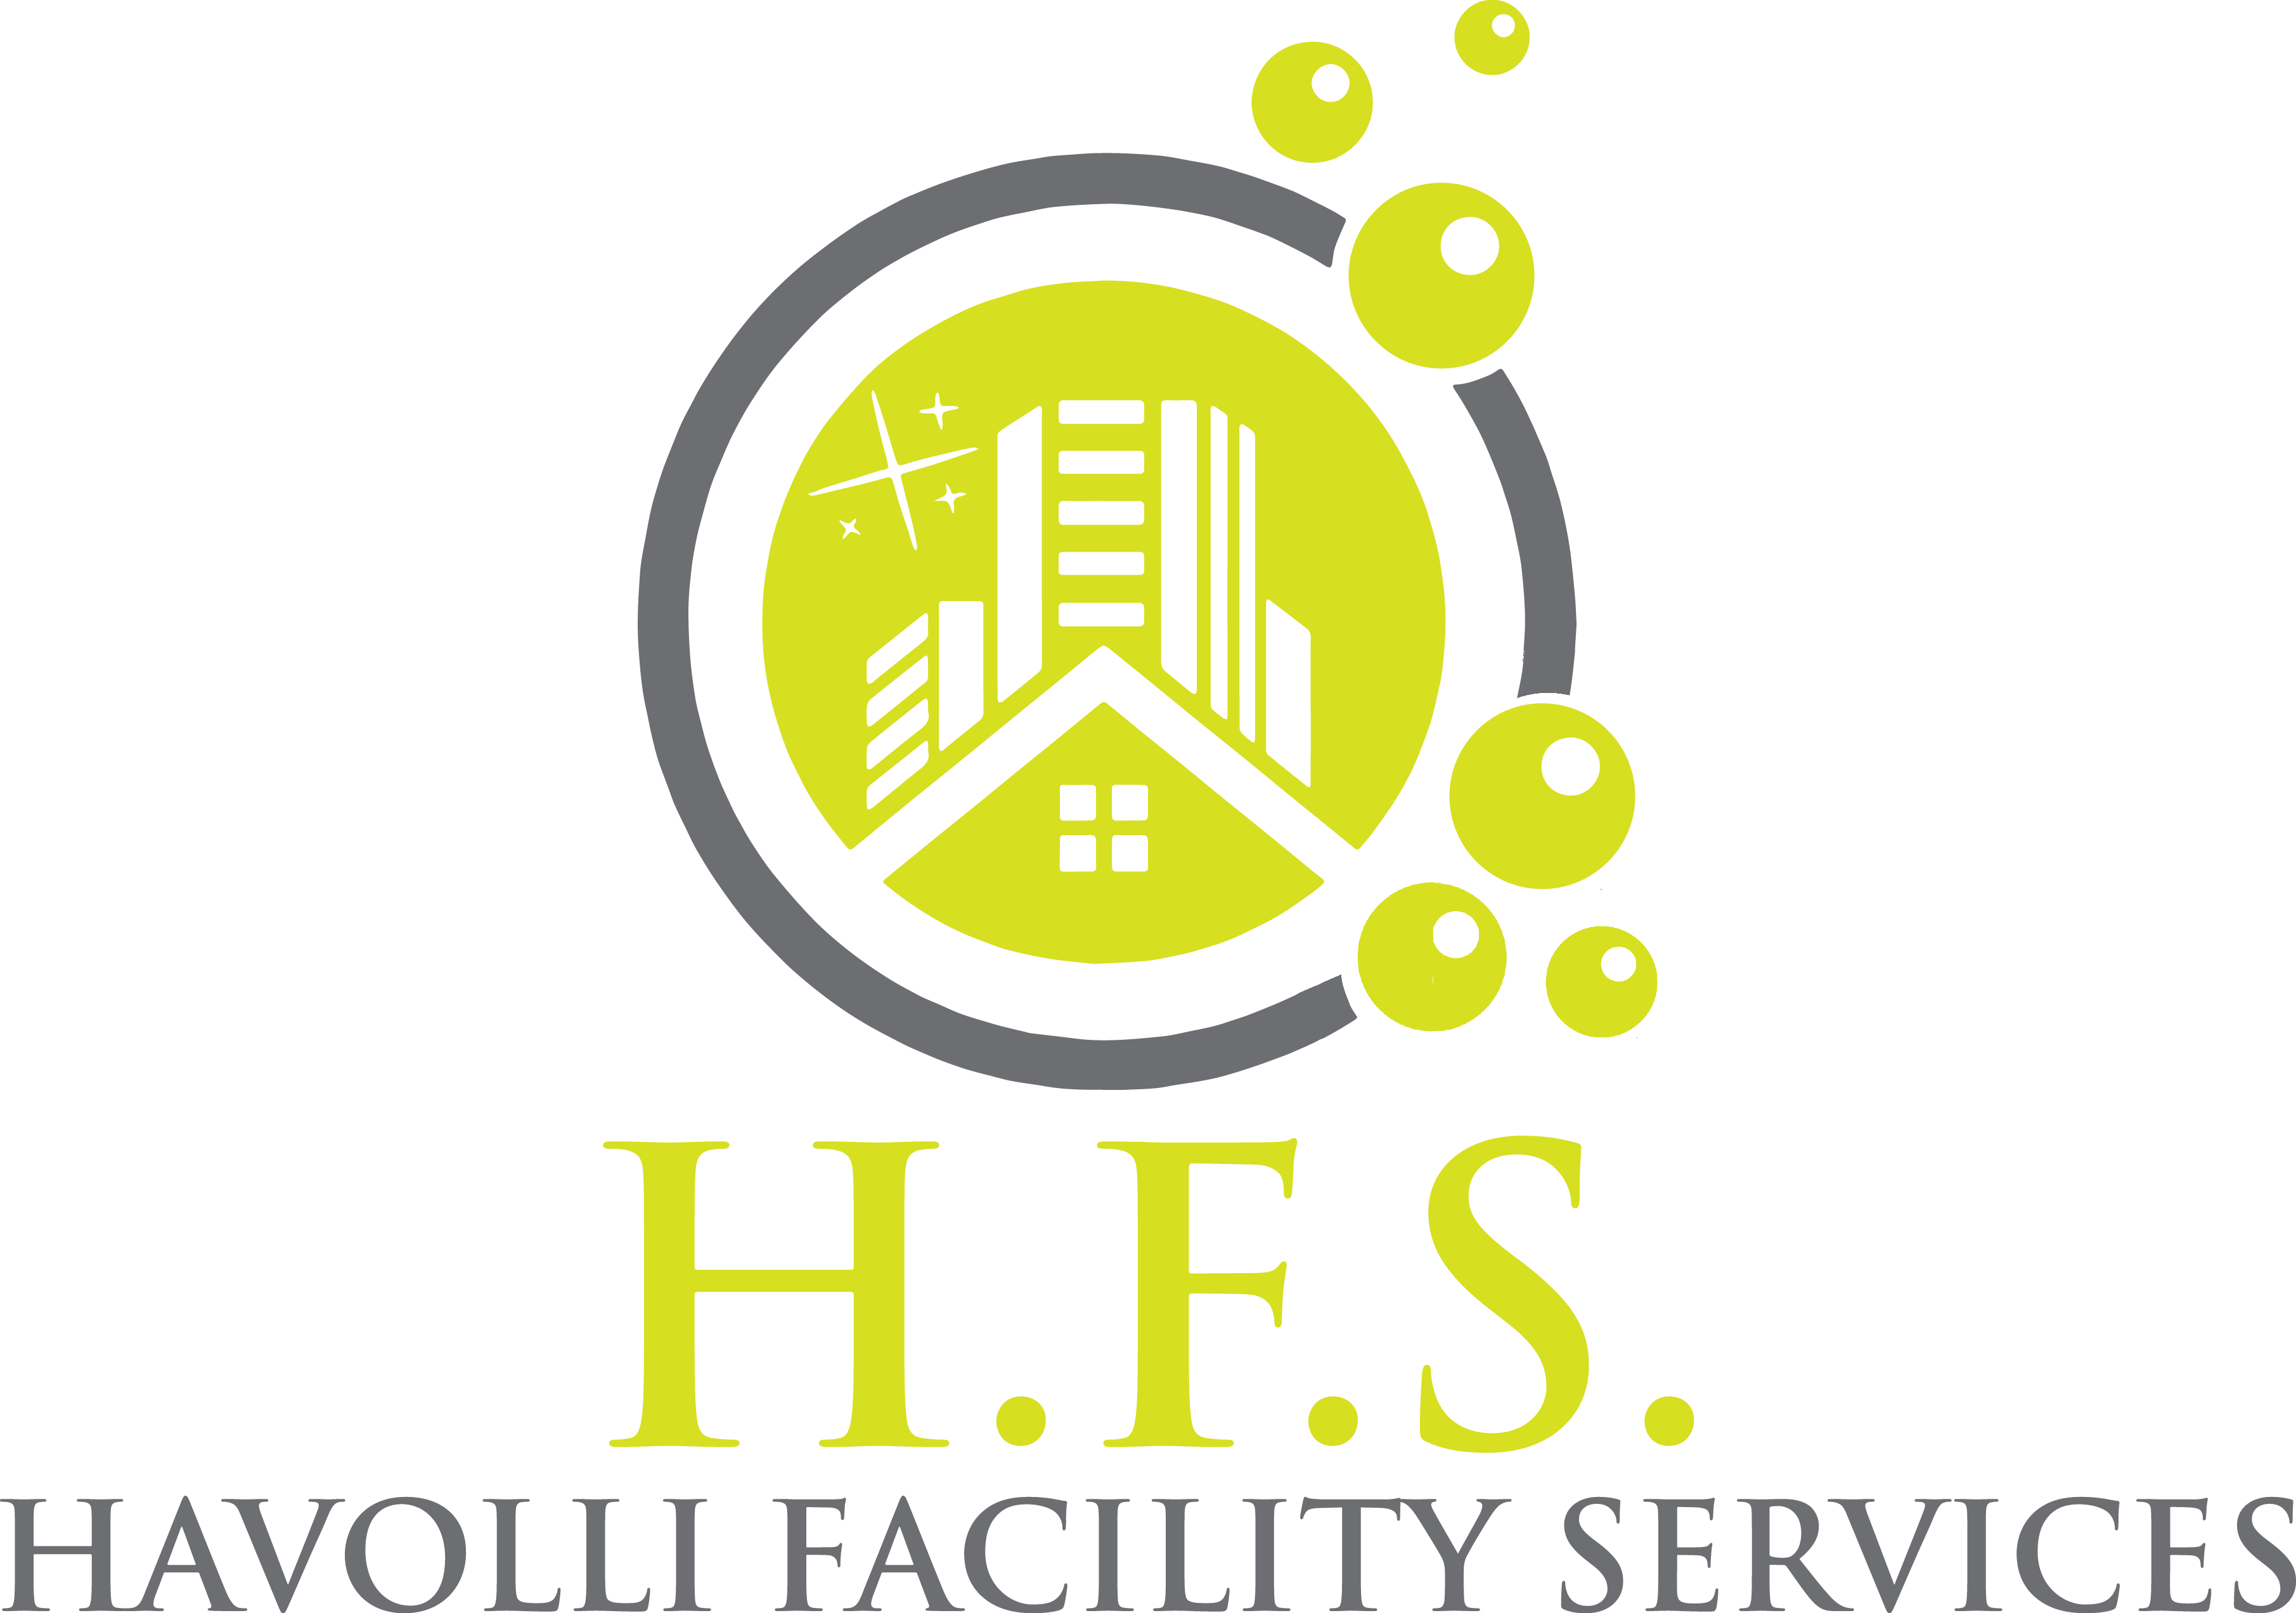 Havolli Facility Services GmbH & Co KG in Graz